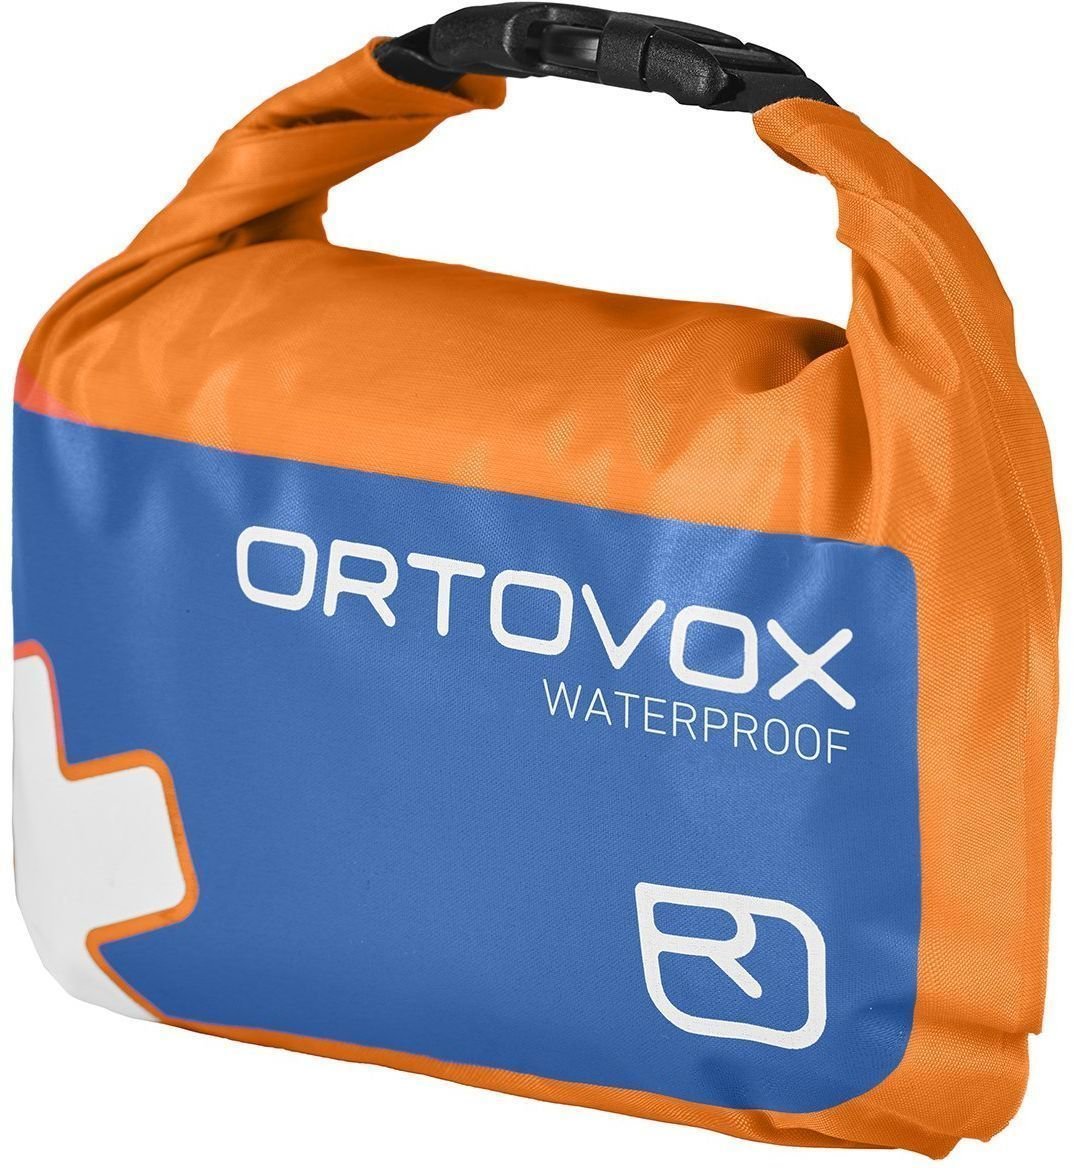 Lawine-uitrusting Ortovox First Aid Waterproof